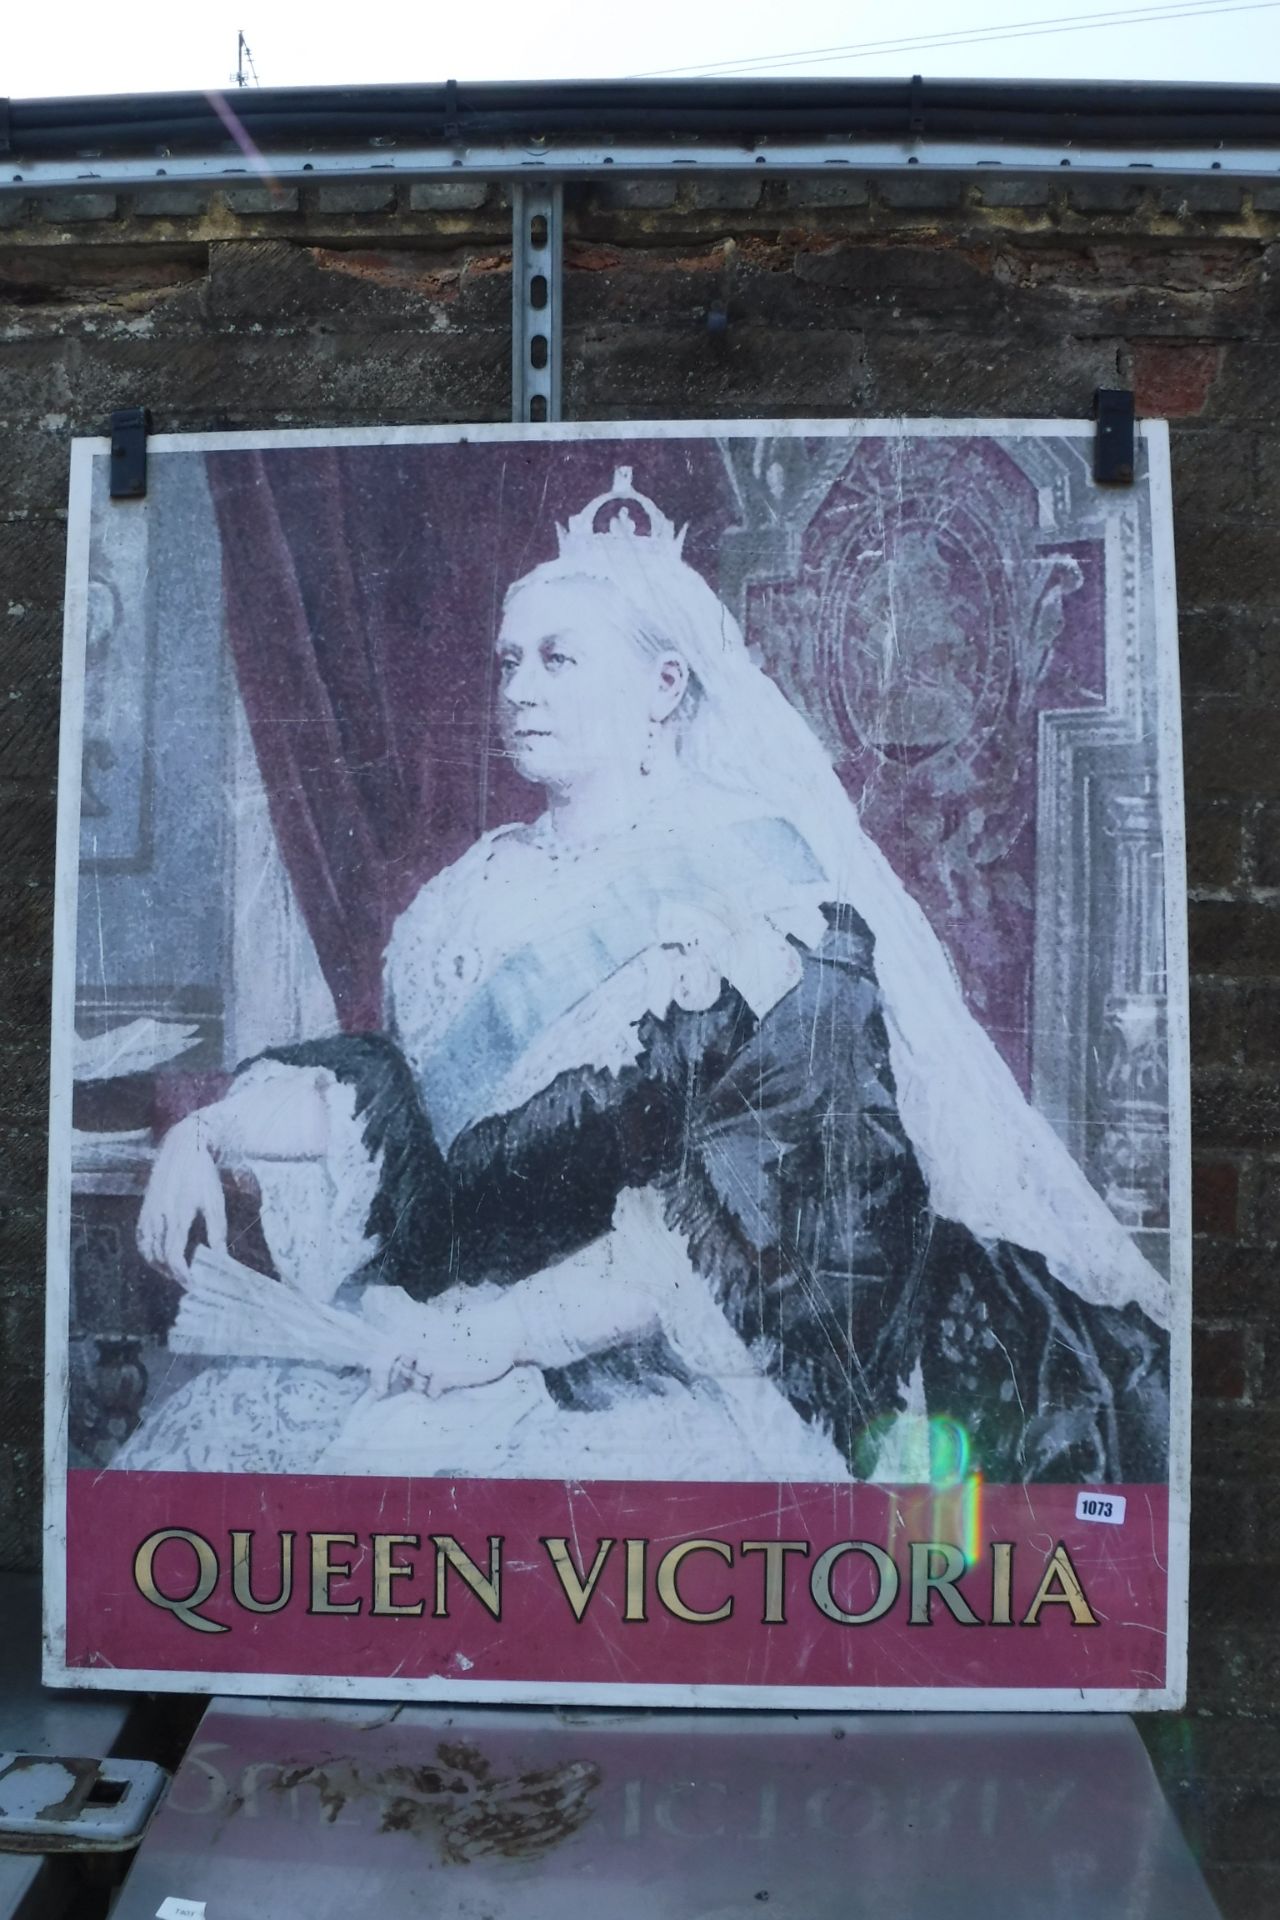 Queen Victoria pub sign